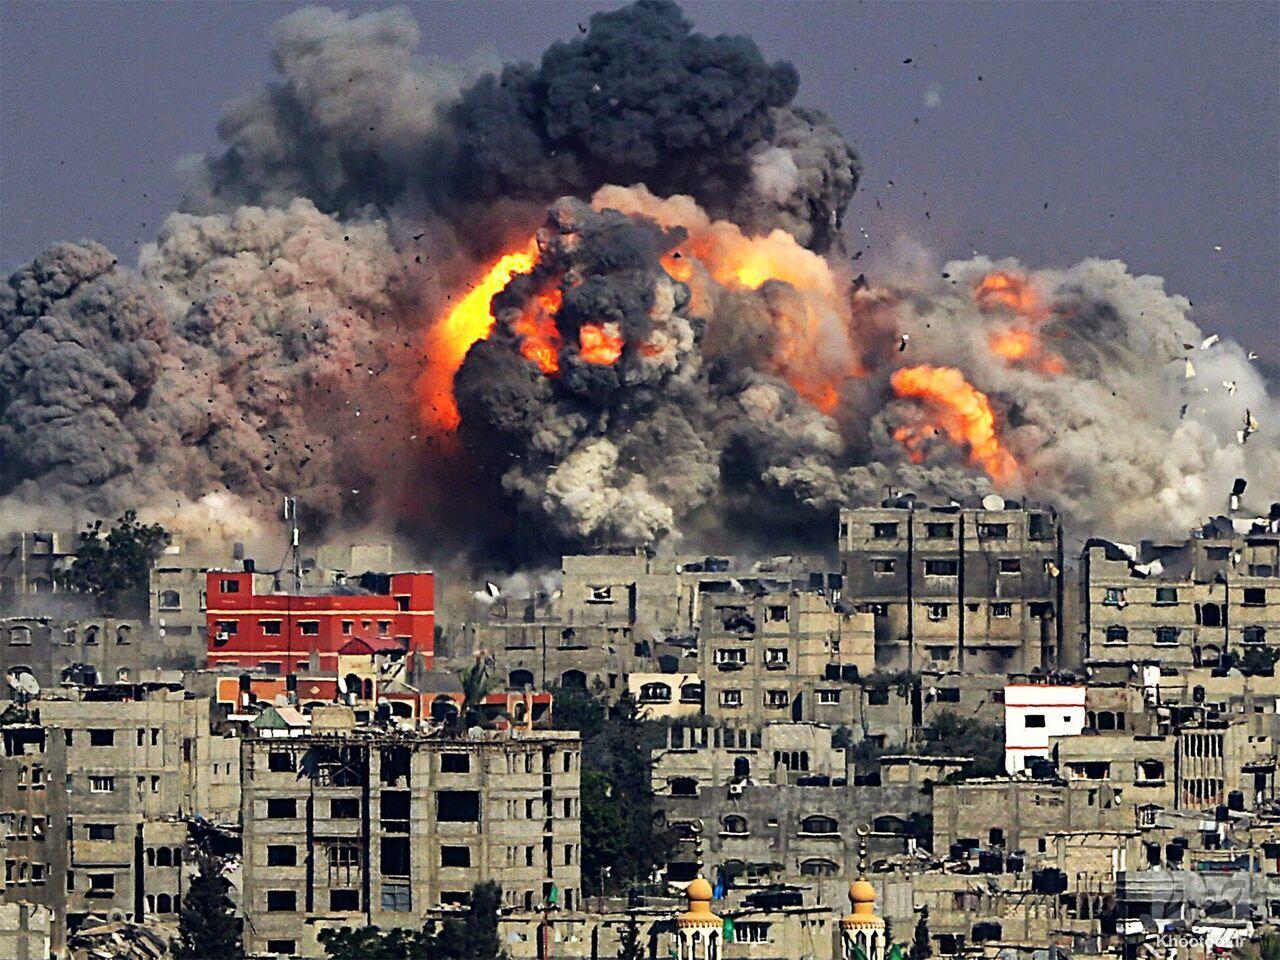 استقامت مردم غزه تعیین کننده این جنگ است!/ نتانیاهو یک قاتل حتی در سرزمین های اشغالی متهم است!